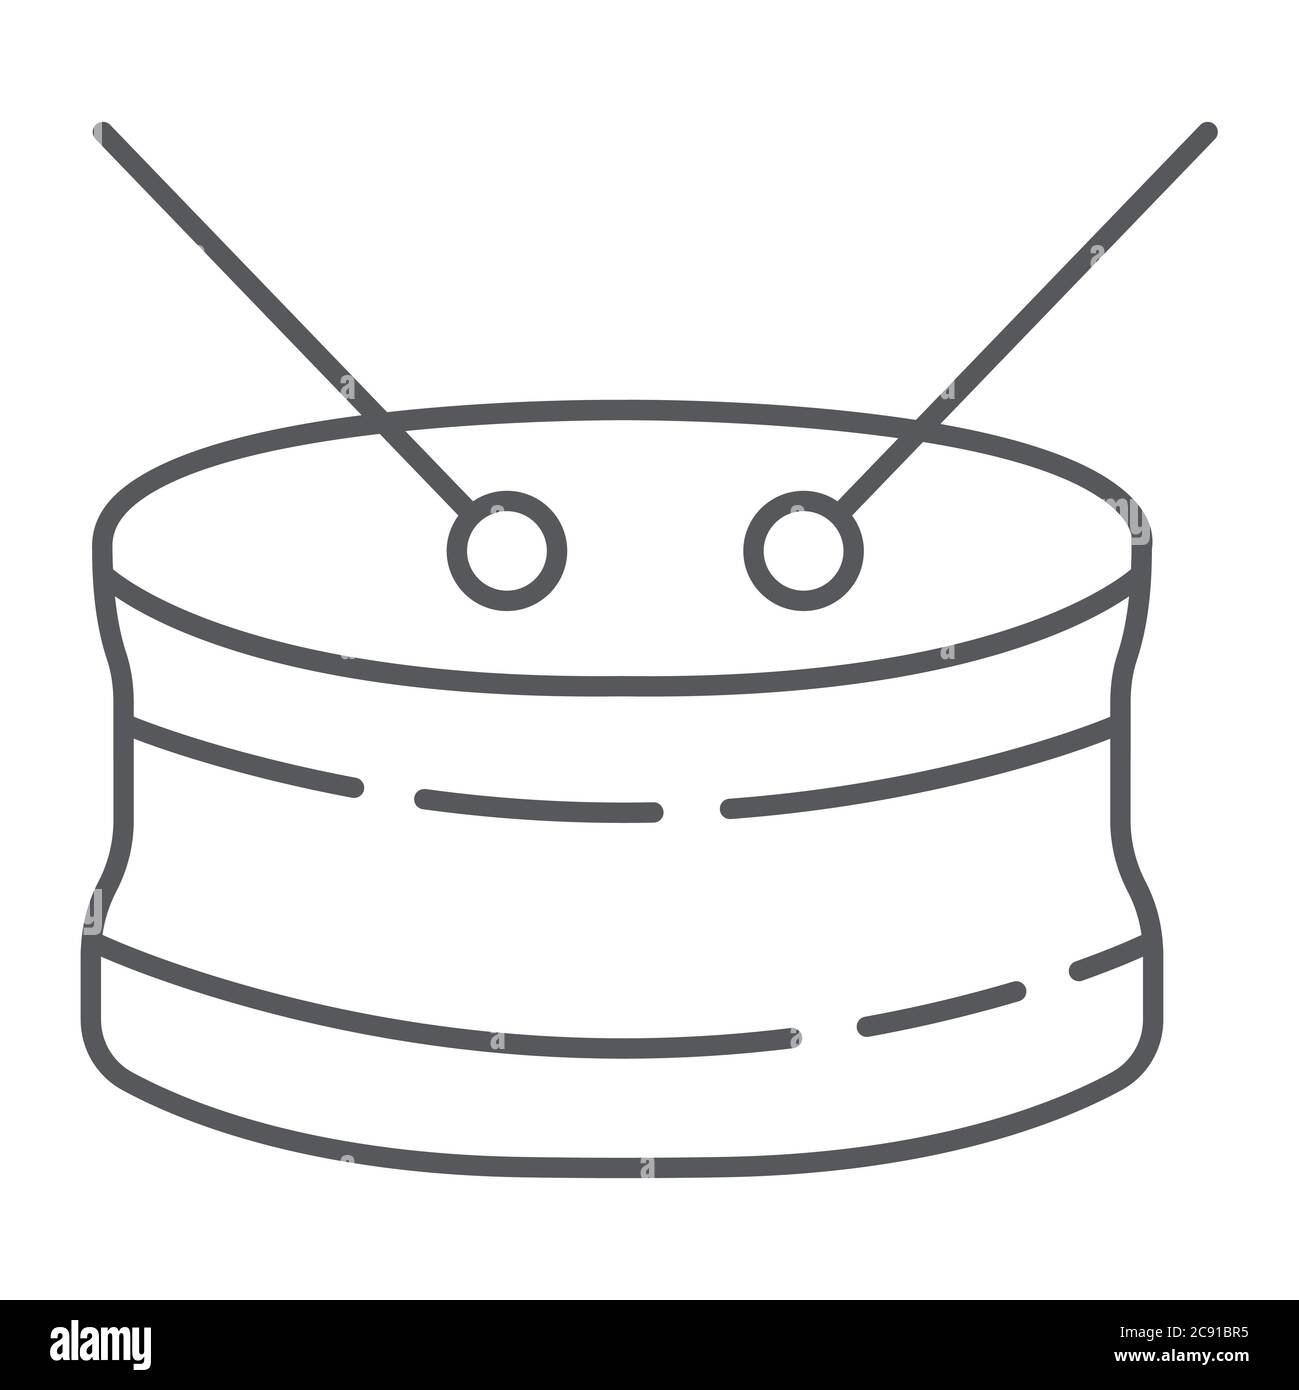 Icona della linea sottile del tamburo di Snare, musical e strumento, segno della batteria, grafica vettoriale, un motivo lineare su uno sfondo bianco. Illustrazione Vettoriale